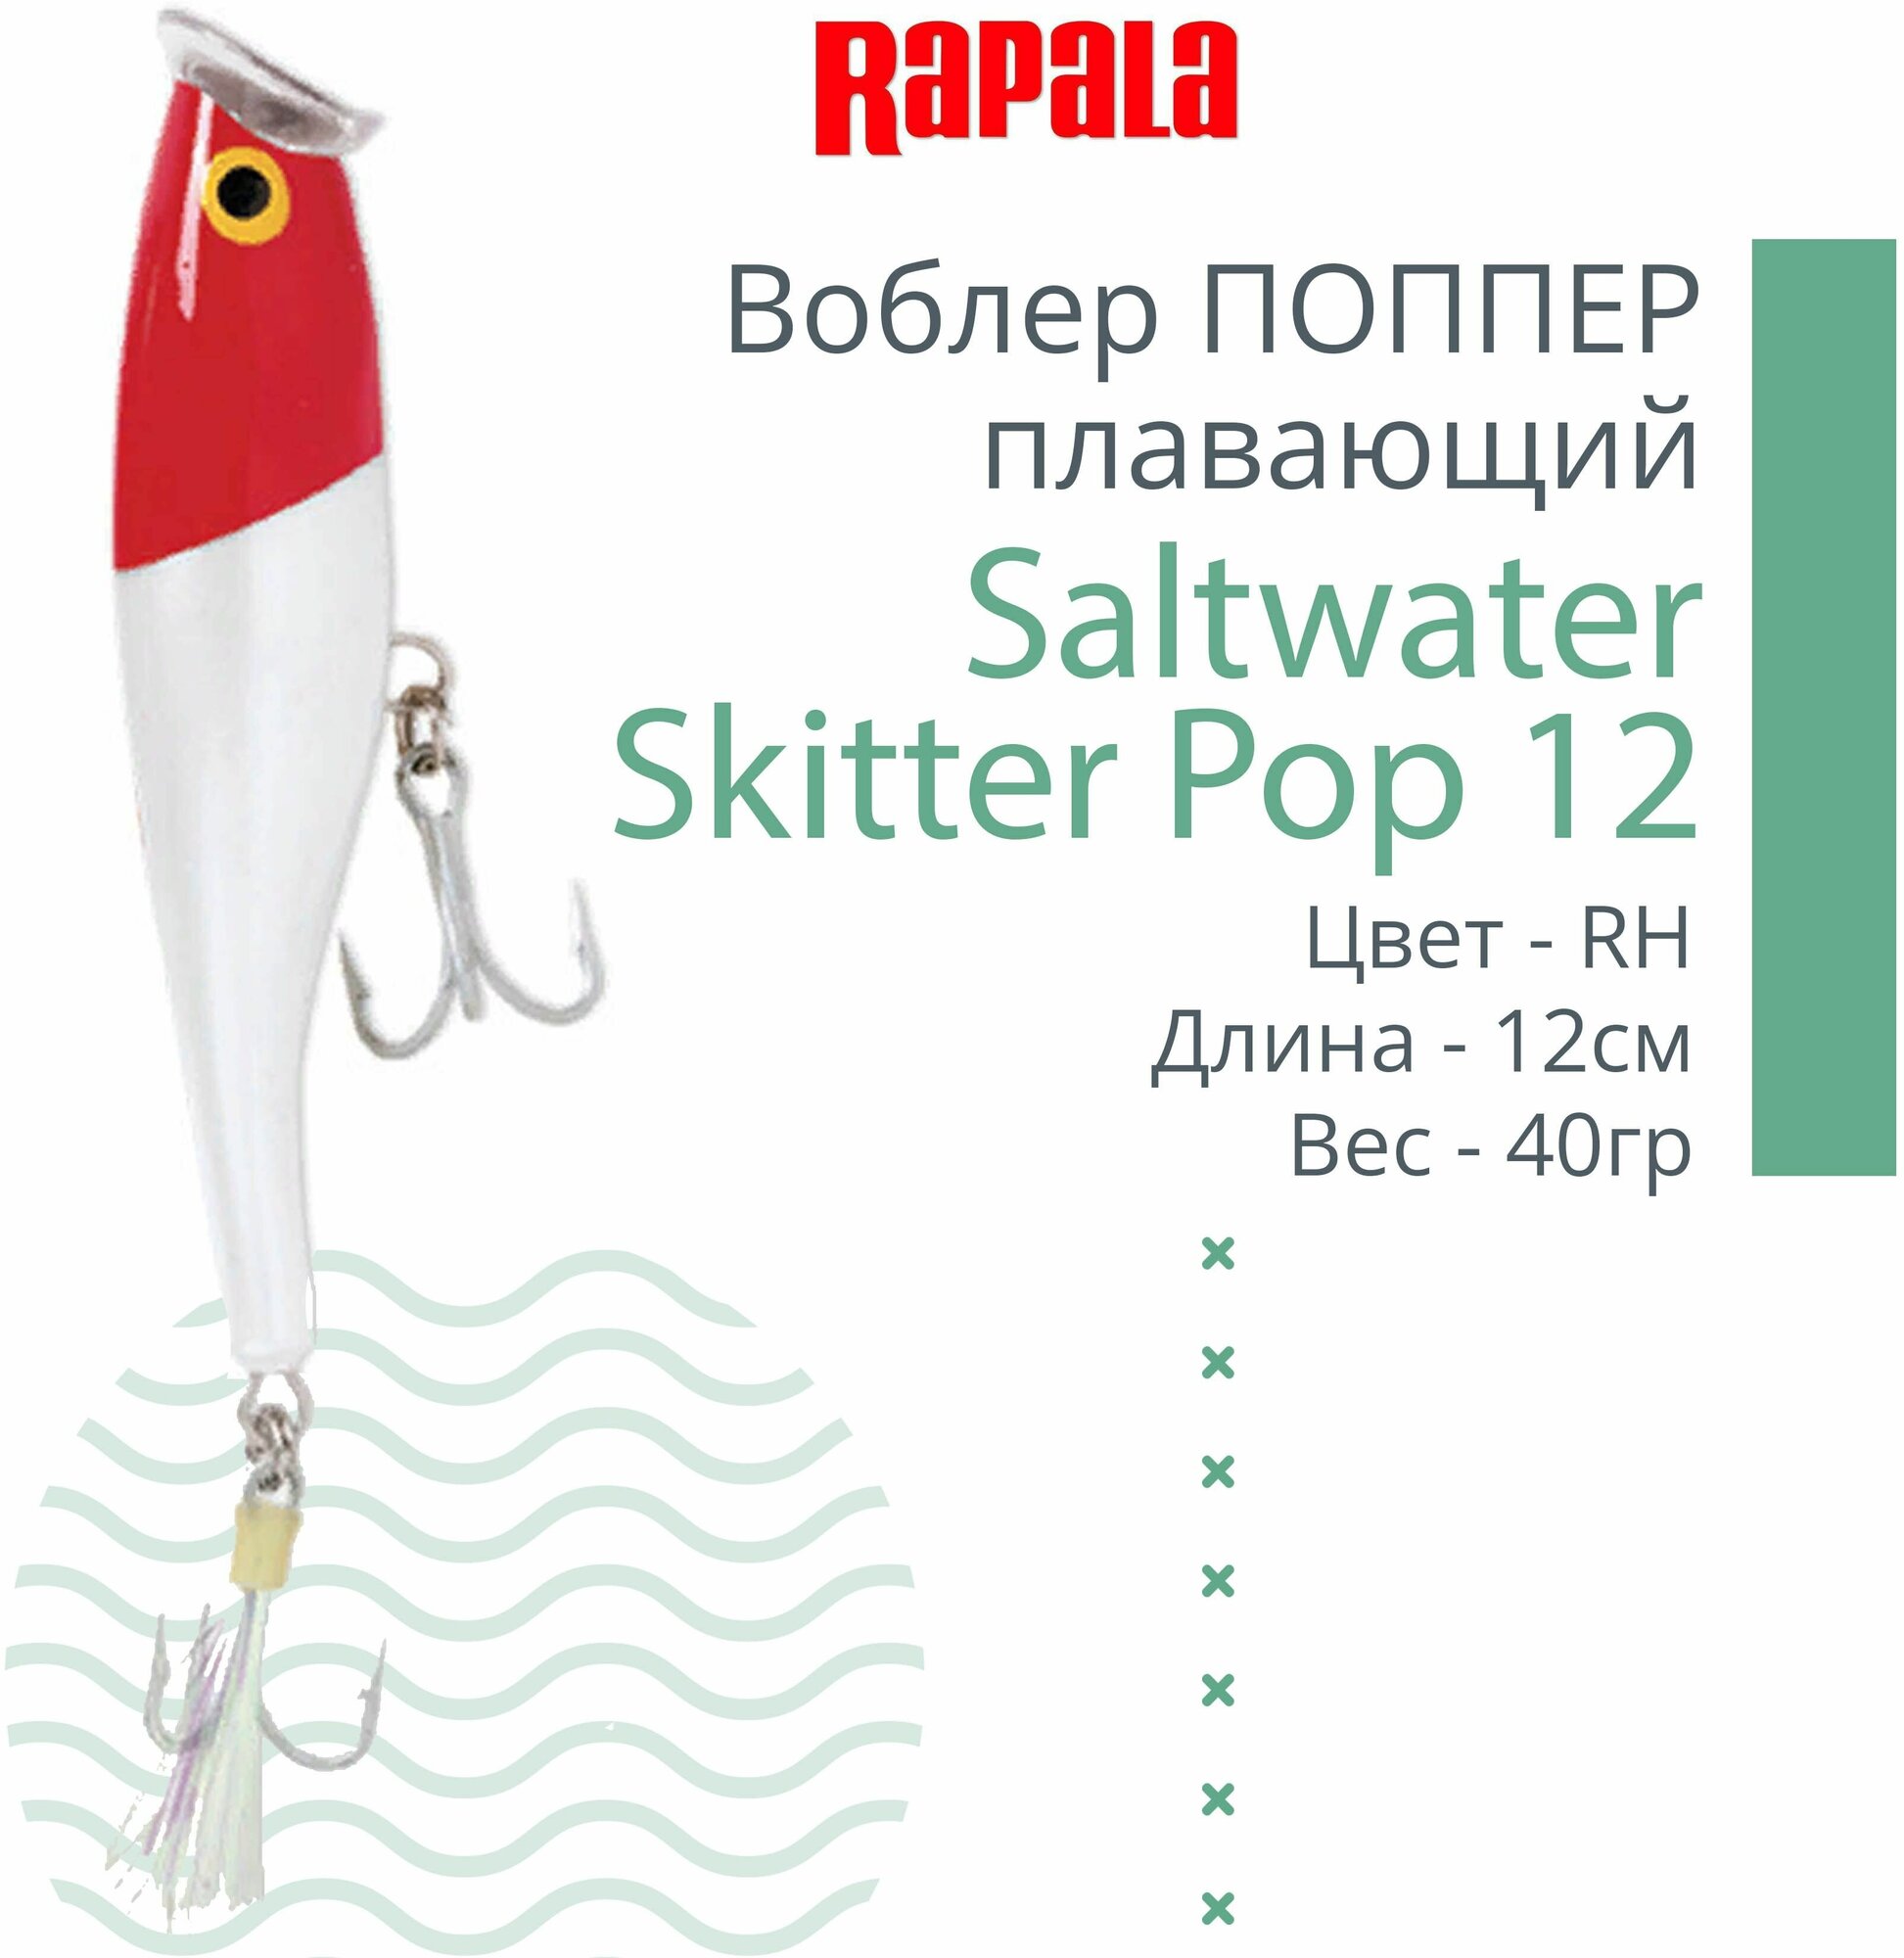 Воблер для рыбалки RAPALA Saltwater Skitter Pop 12, 12см, 40гр, цвет RH, плавающий